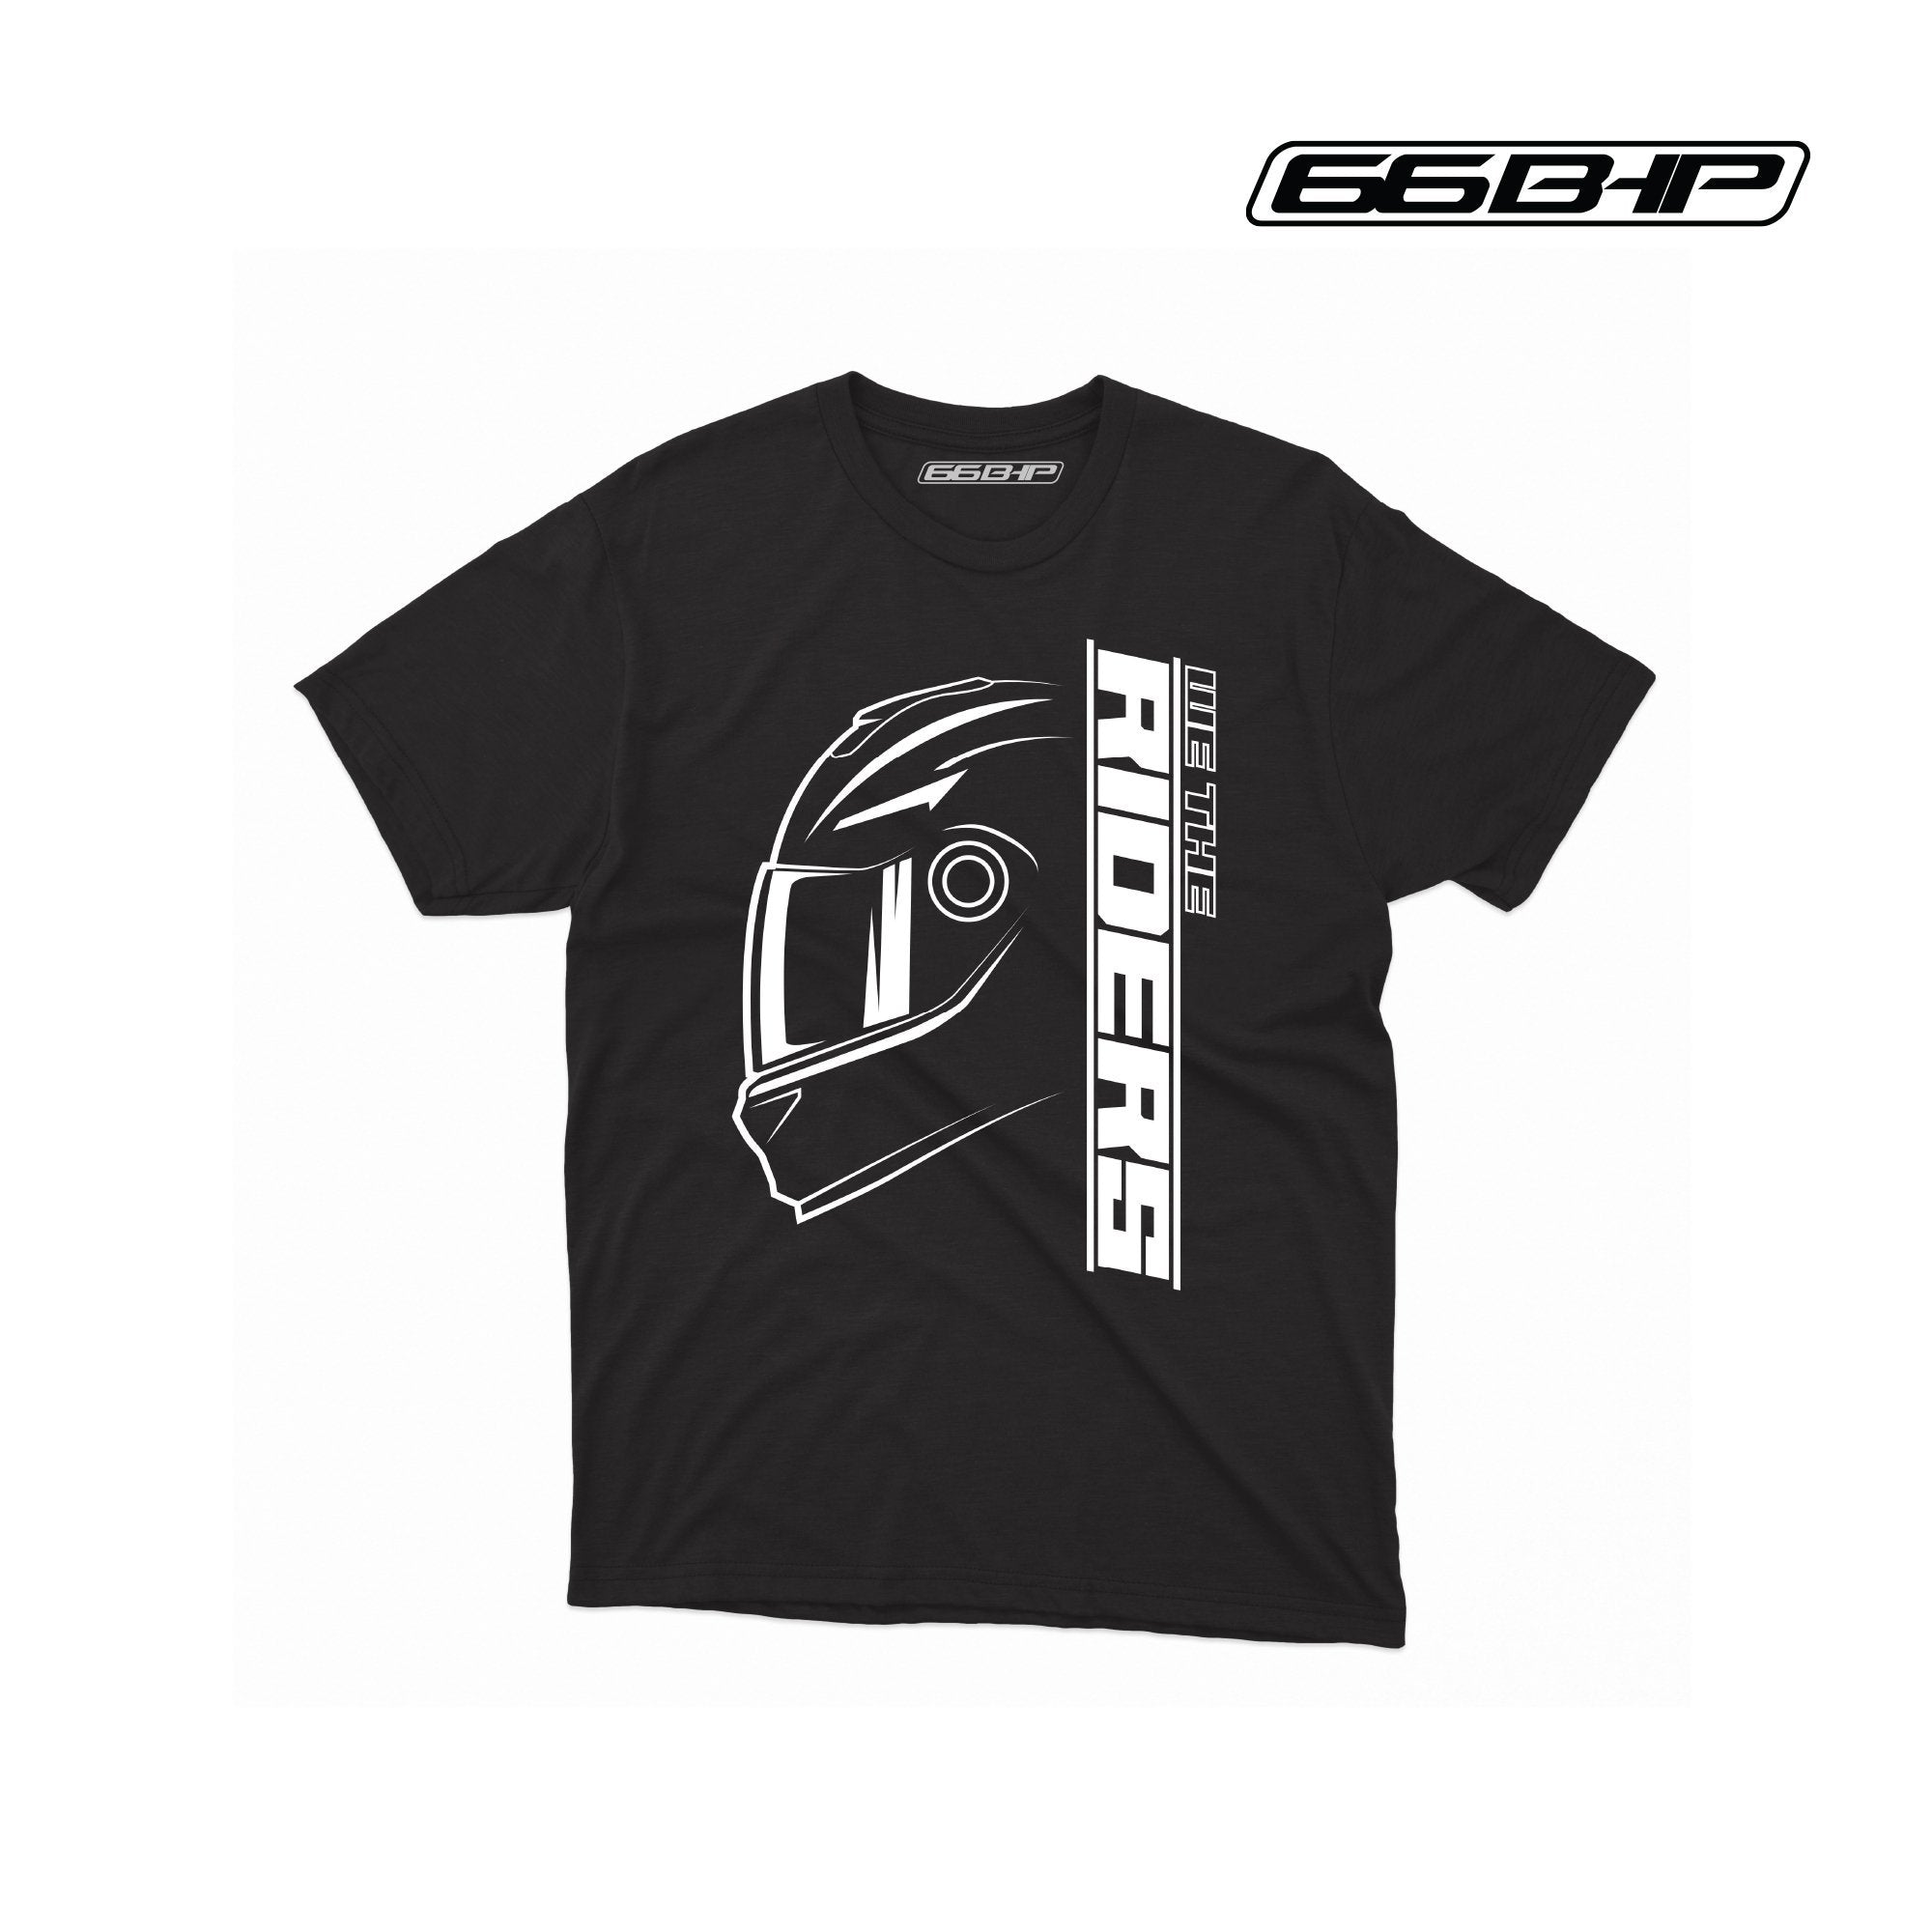 66BHP - Riders T-Shirt Black for Men - LRL Motors